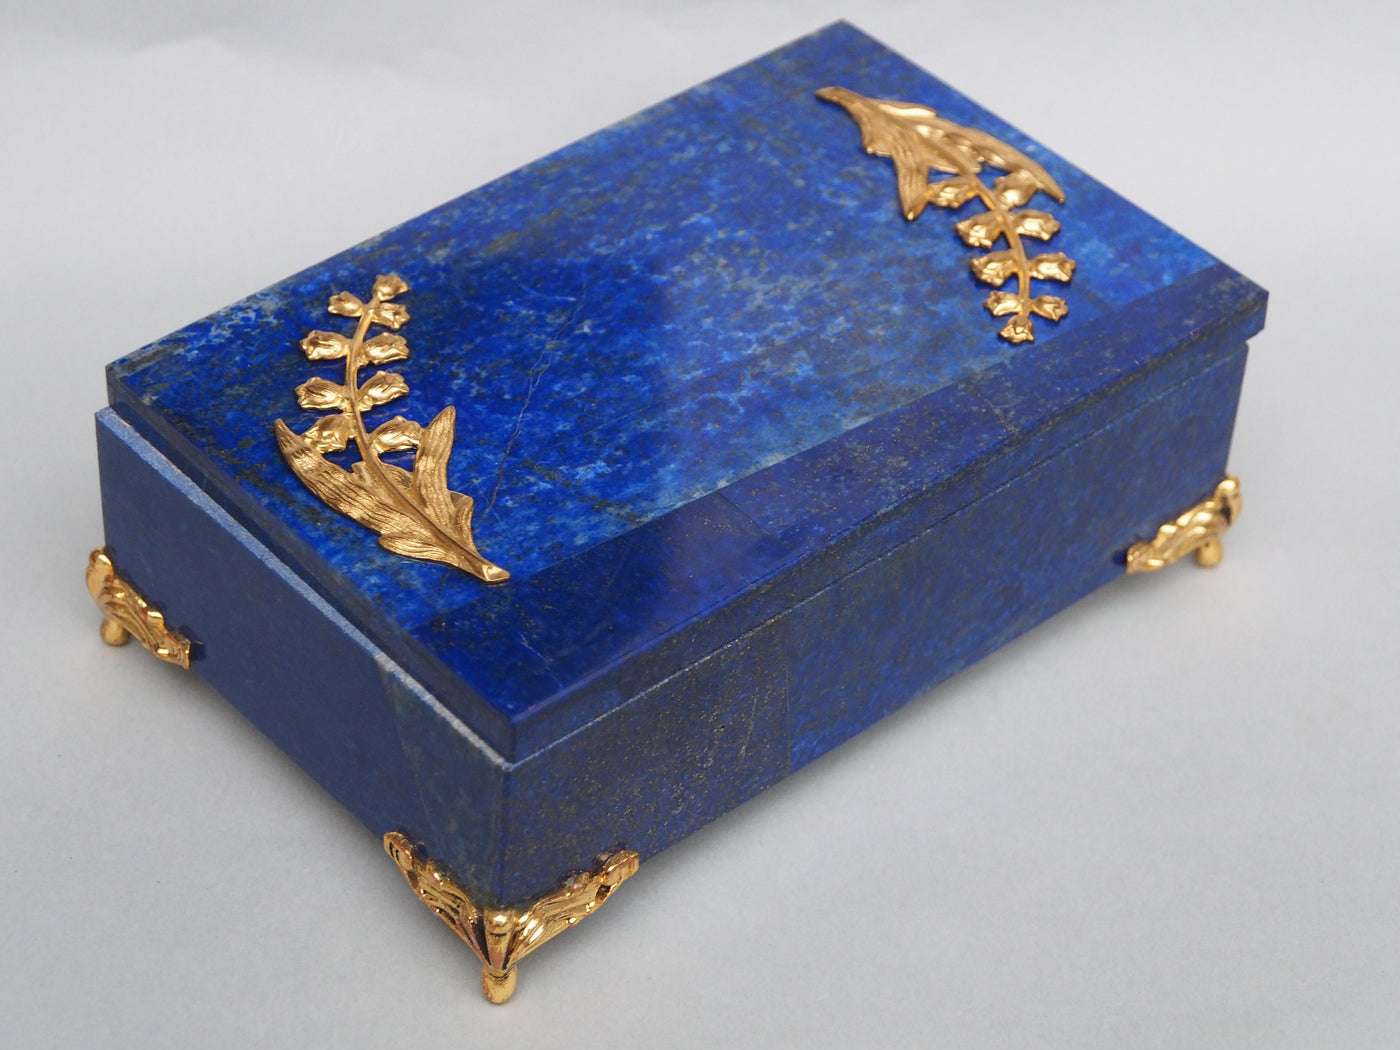 Extravagant Royal blau echt Lapis lazuli büchse Schmuck Dose schatulle Gefäß Pillen Dose aus Afghanistan Nr-18/D  Orientsbazar   